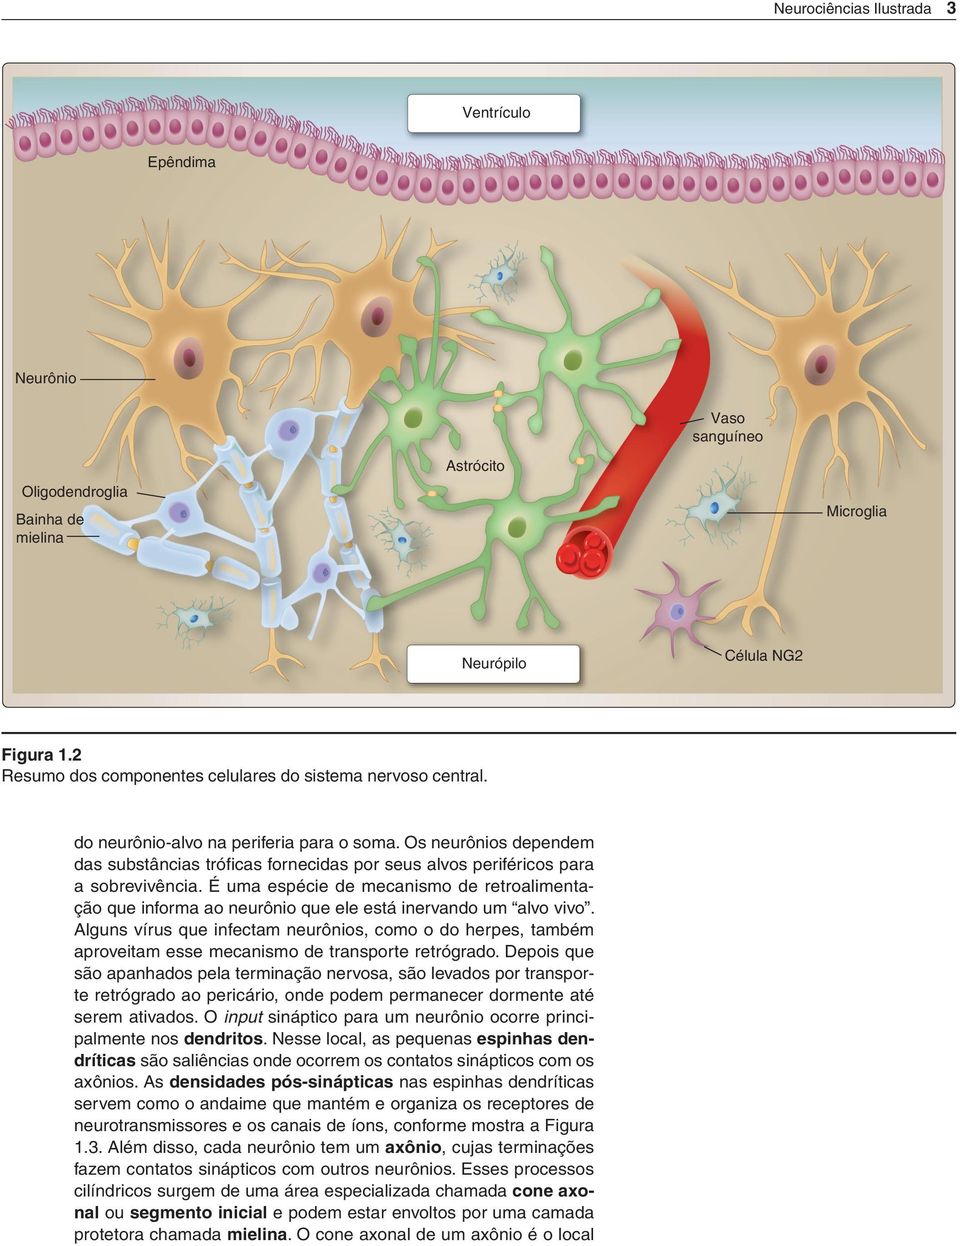 Os neurônios dependem das substâncias tróficas fornecidas por seus alvos periféricos para a sobrevivência.